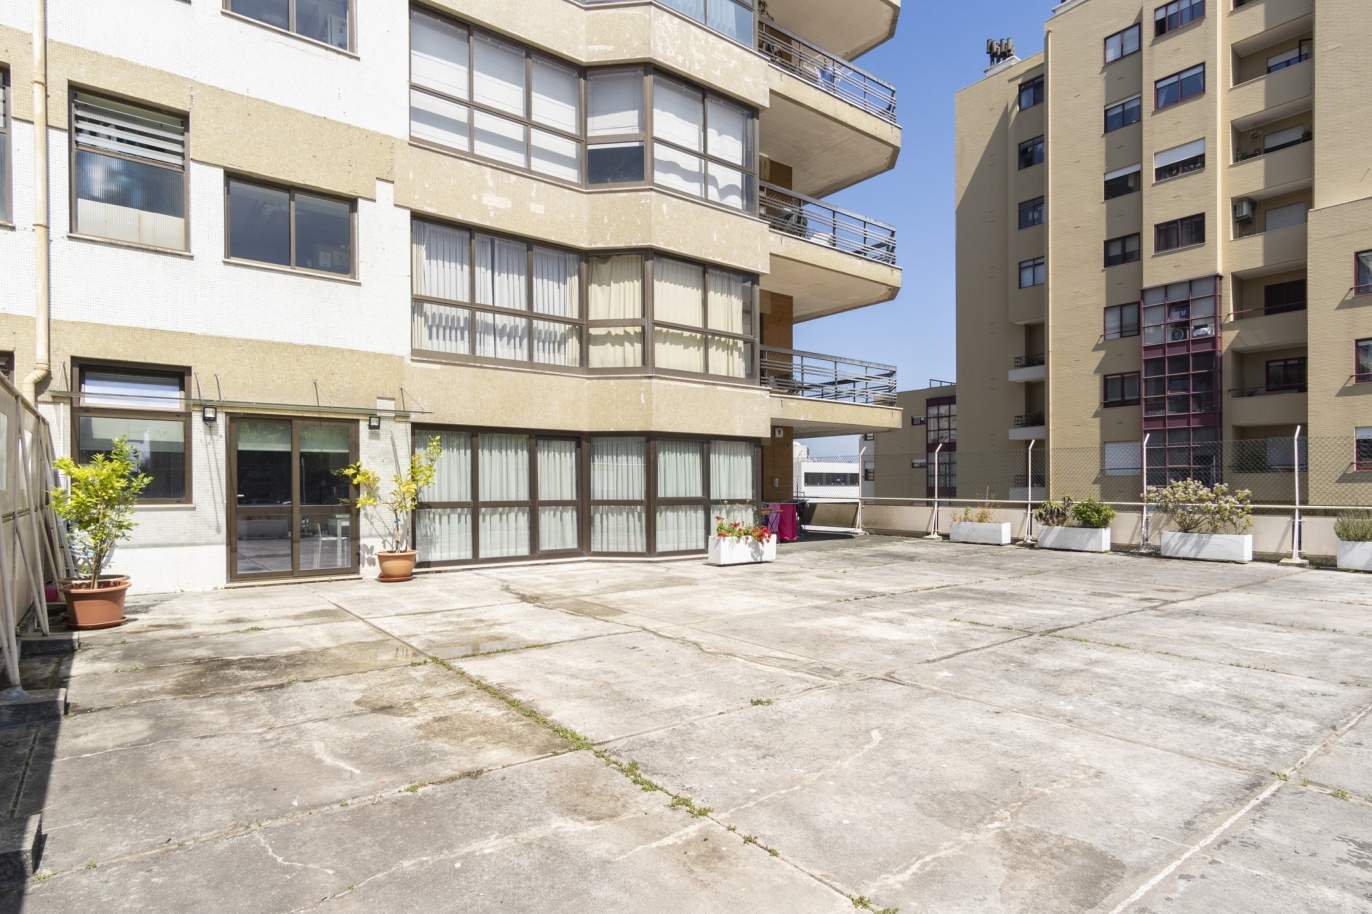 Apartamento remodelado com terraço, para venda, em Paranhos, Porto_198939